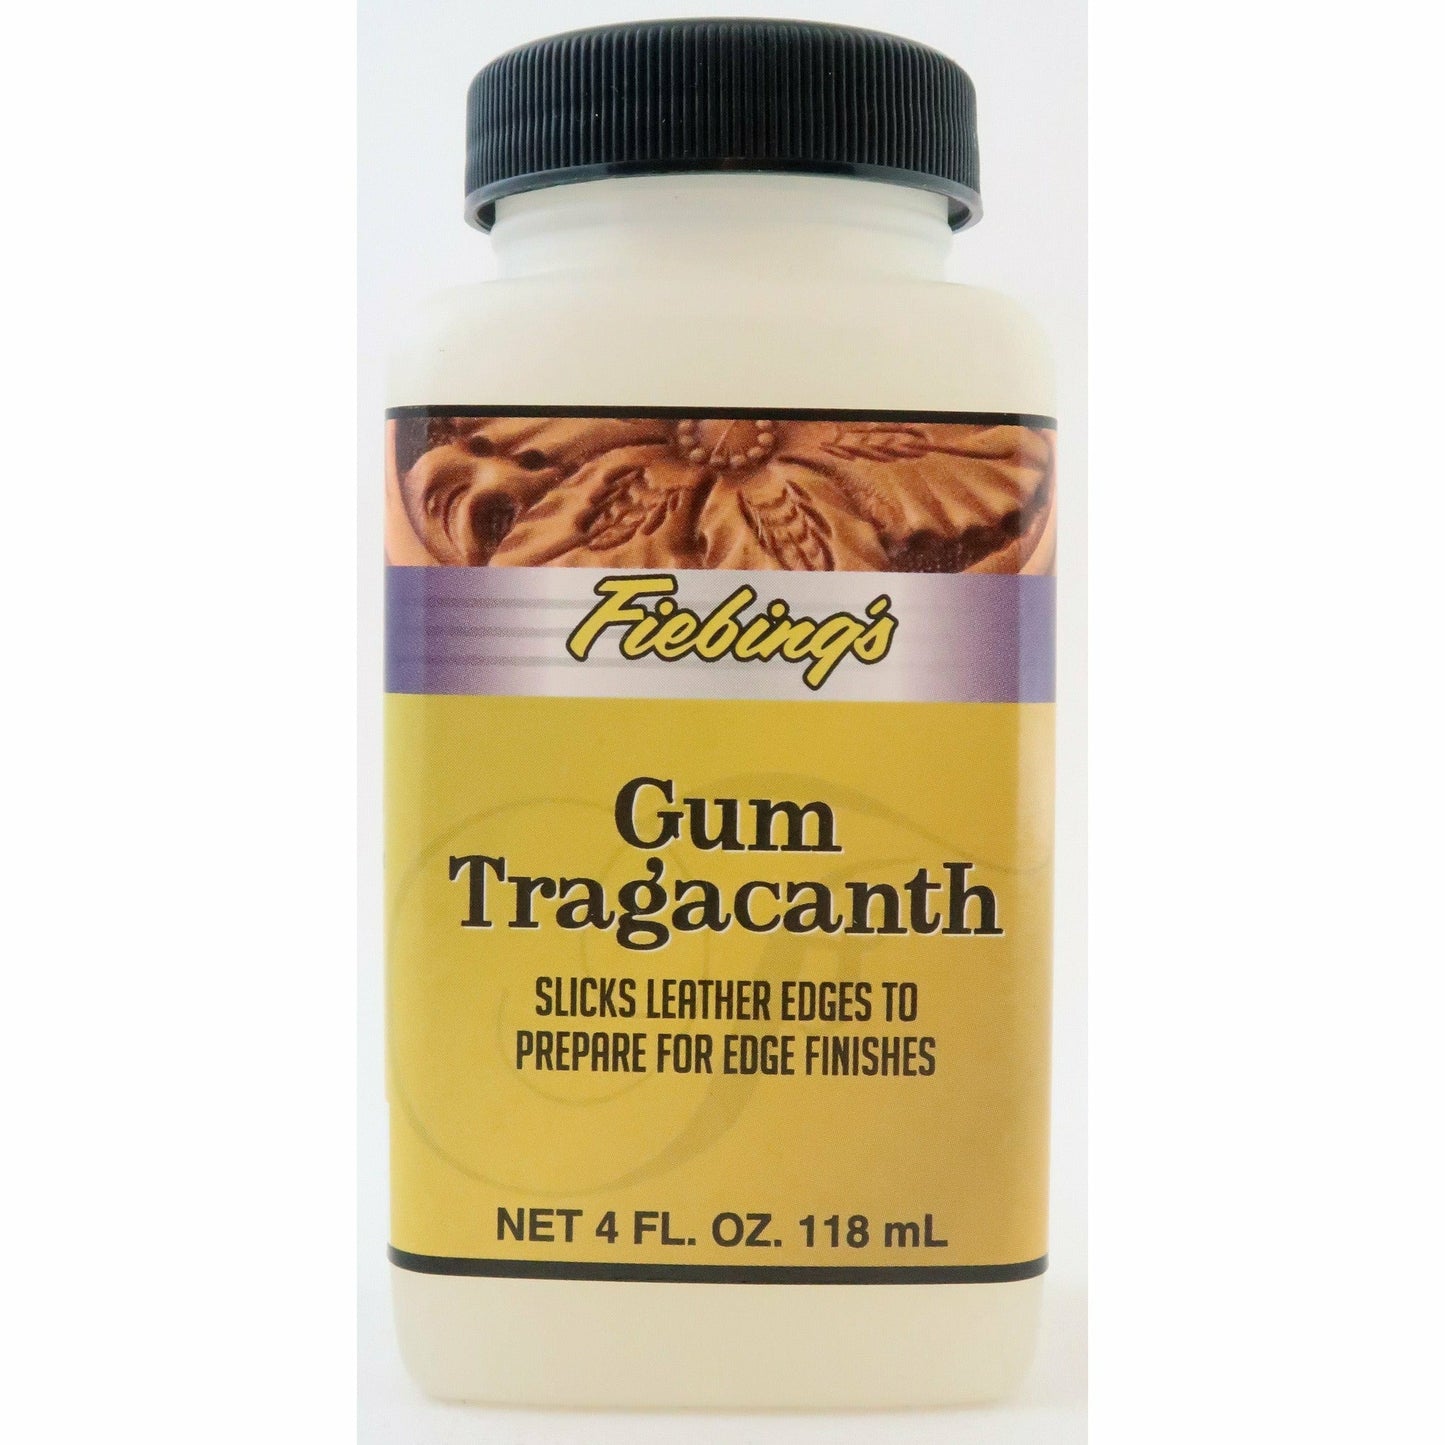 Gum Tragacanth Fiebings 118ml